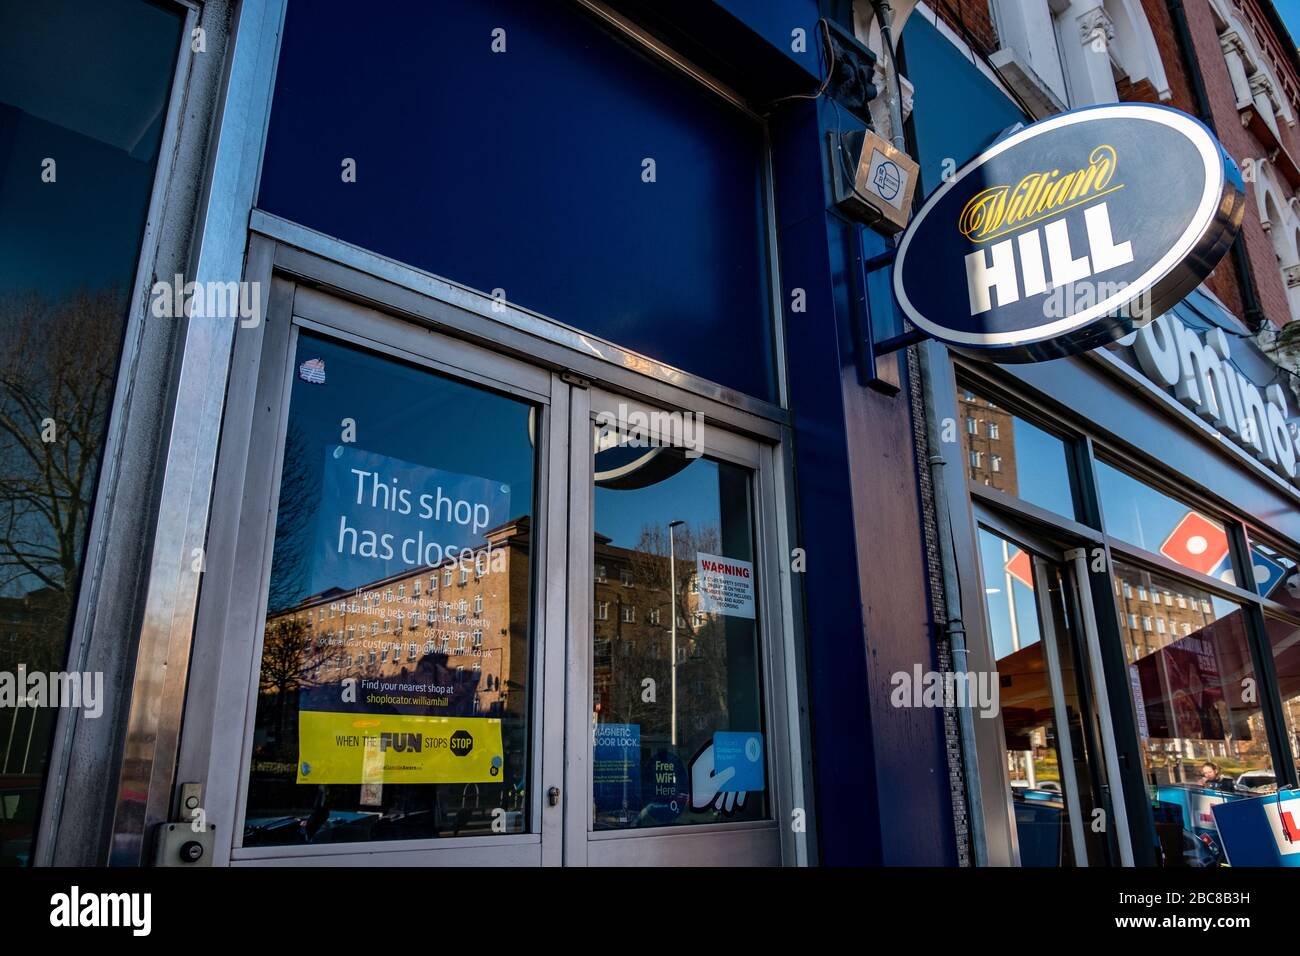 Recentemente chiuso lungo William Hill High Street bookmaker / negozio di scommesse - logo esterno / segnaletica - Londra Foto Stock